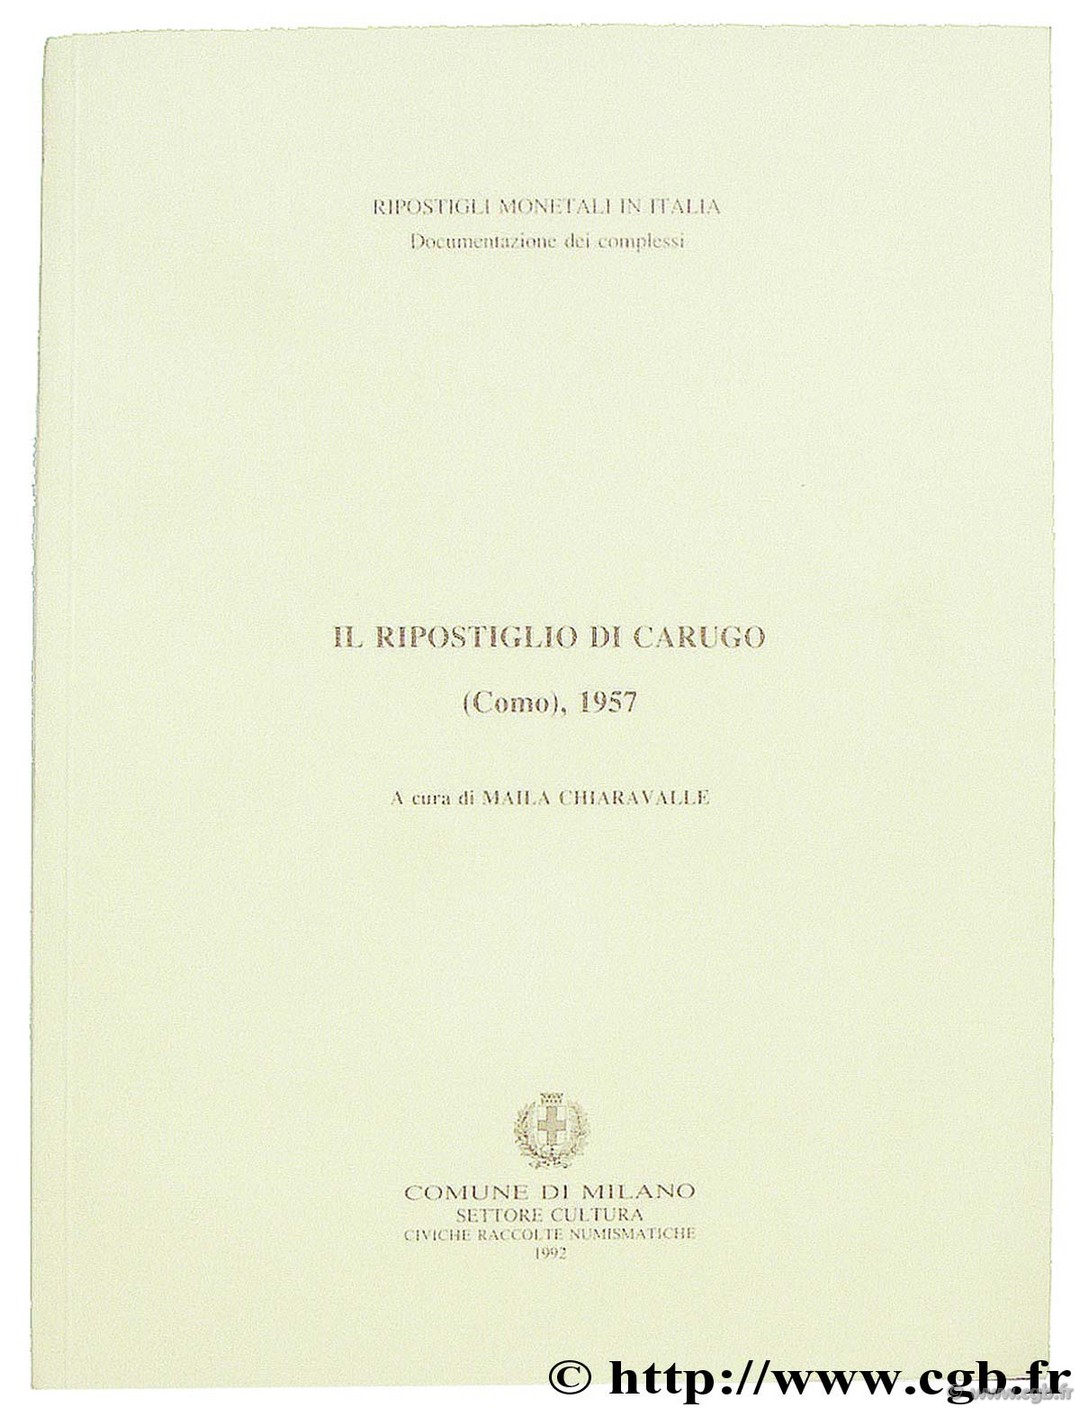 Il Ripostiglio di Carugo (Como), 1957 CHIARAVALLE M.